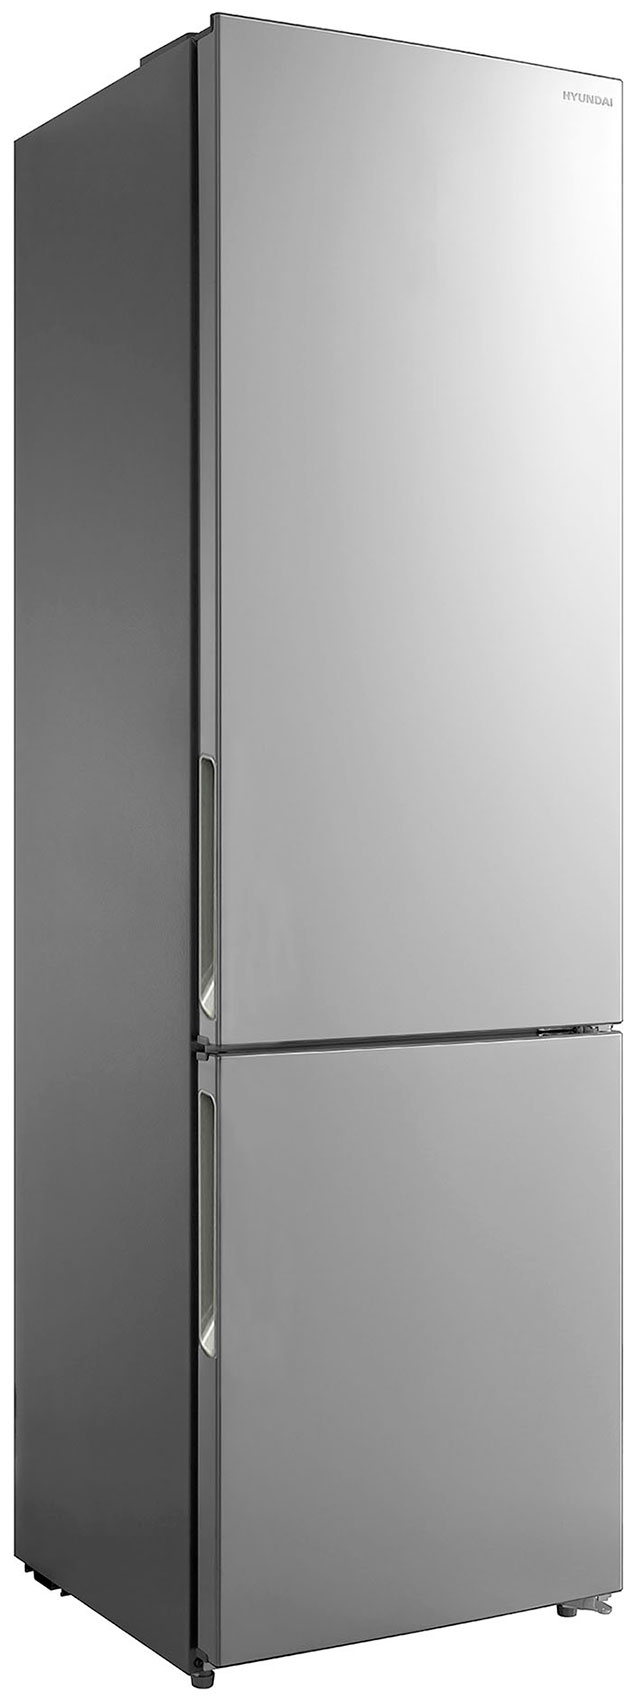 Двухкамерный холодильник Hyundai CC3593FIX нержавеющая сталь холодильник hyundai cc3091lix нержавеющая сталь двухкамерный